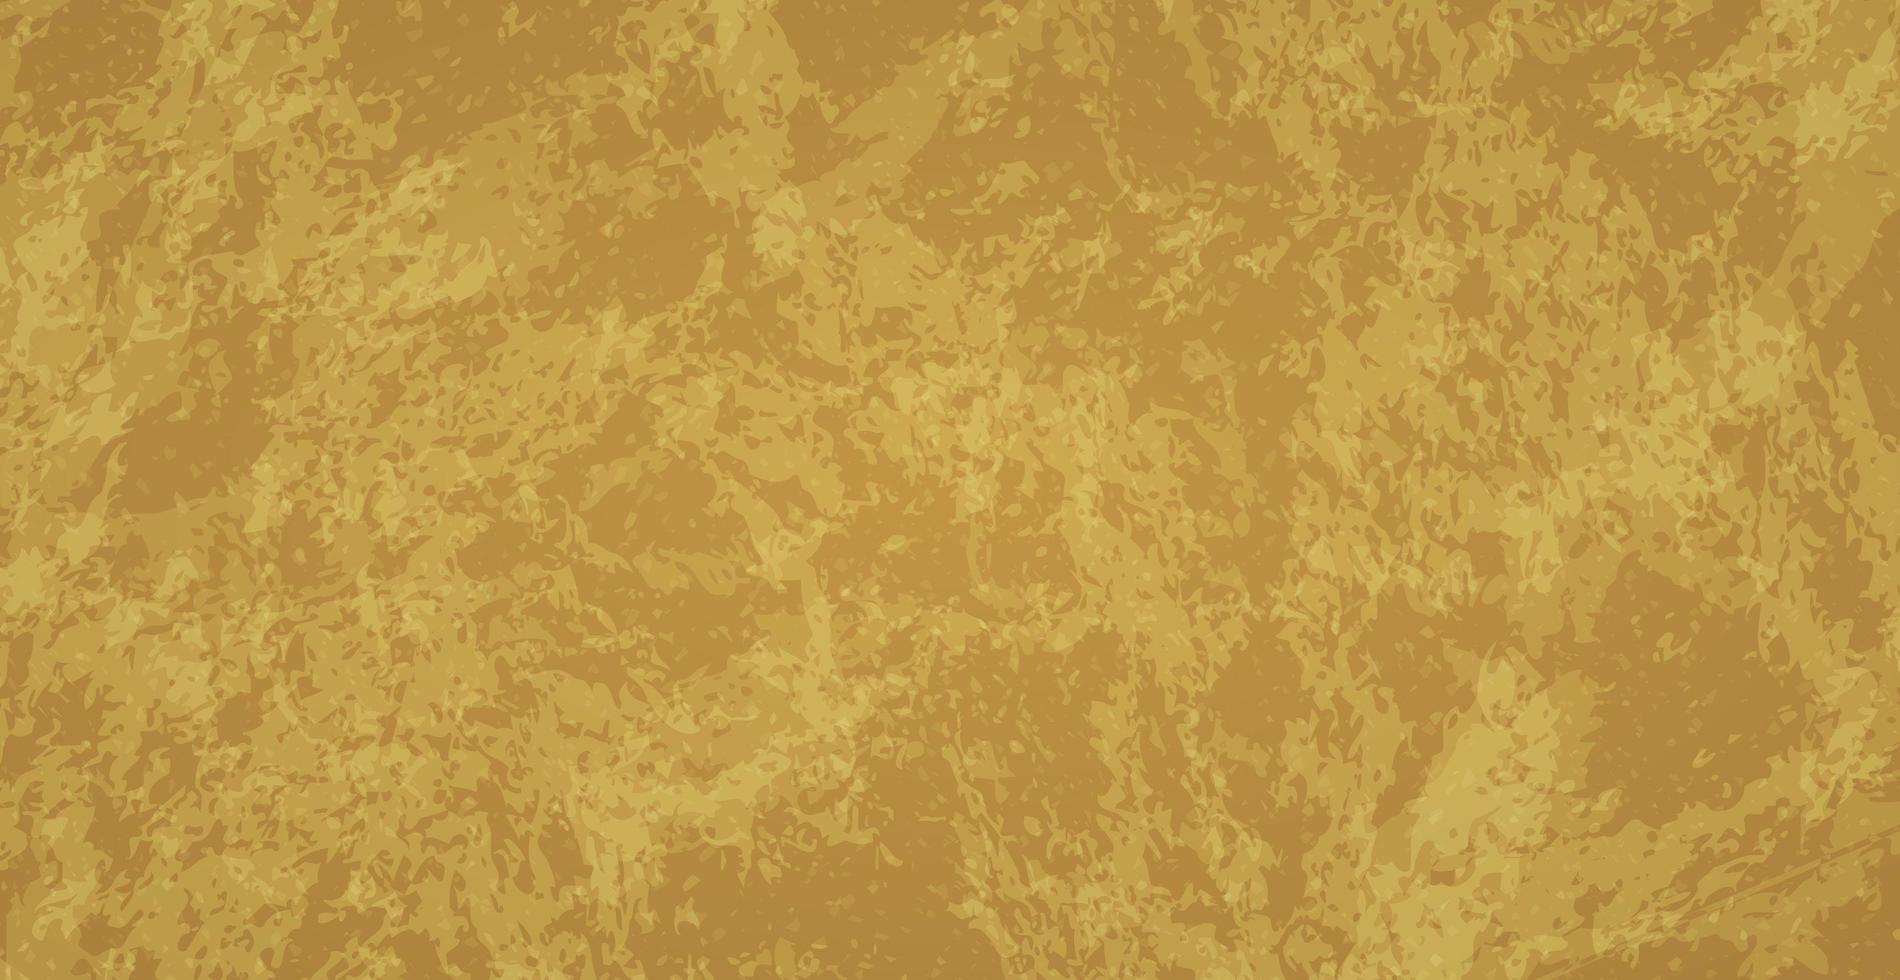 plantilla de fondo grunge con textura abstracta dorada - vector